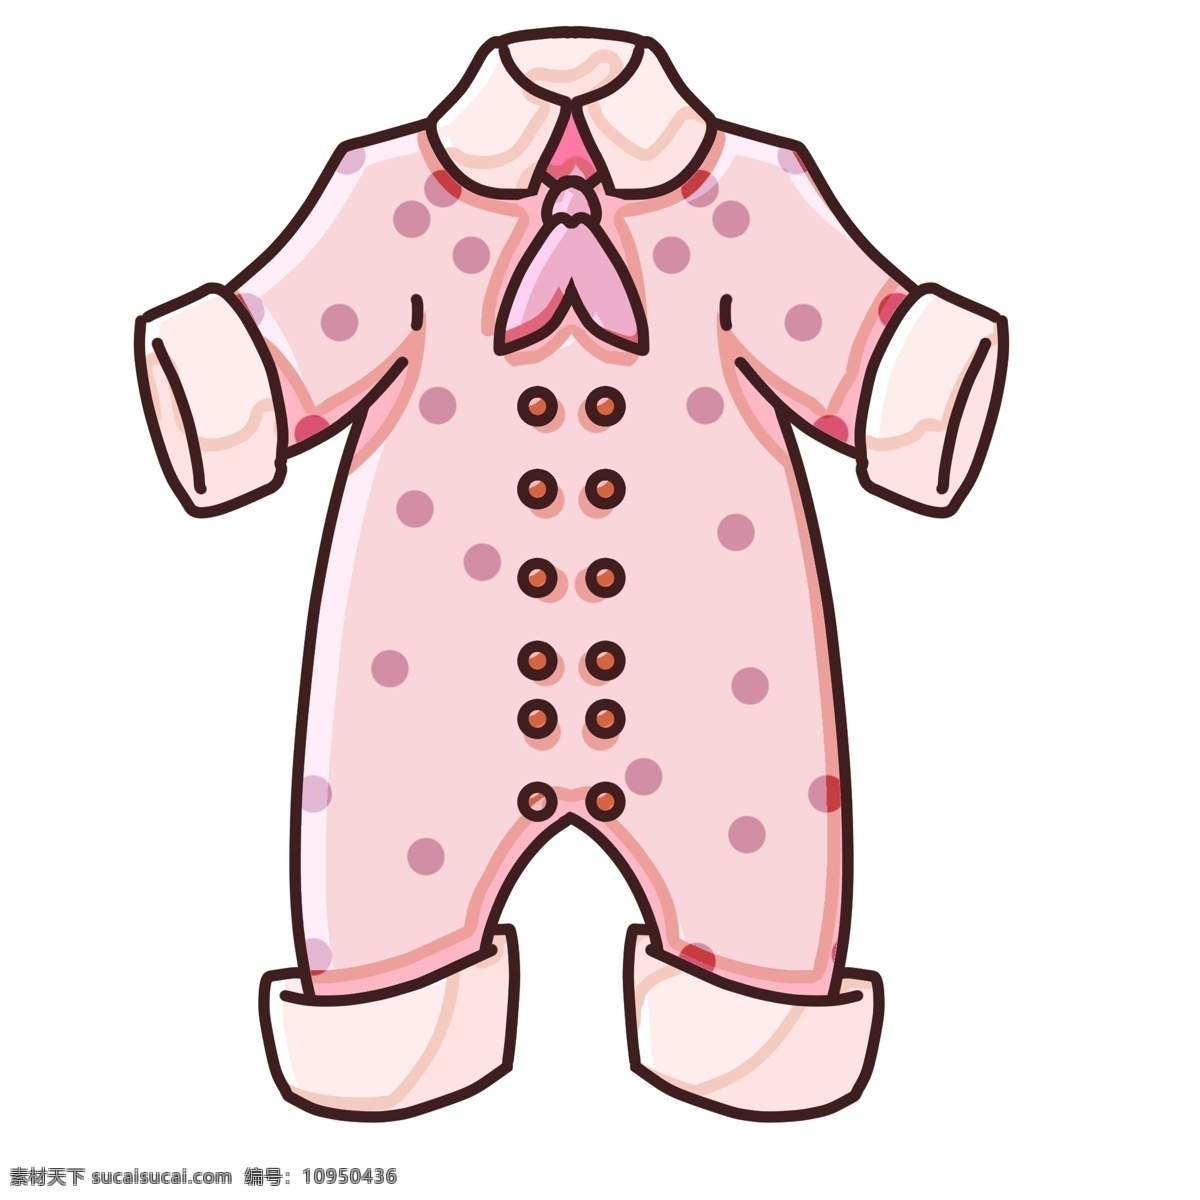 儿童服装 卡通 插画 卡通插画 婴儿服装 衣服 服饰 儿童穿着 粉色的服装 漂亮的服装